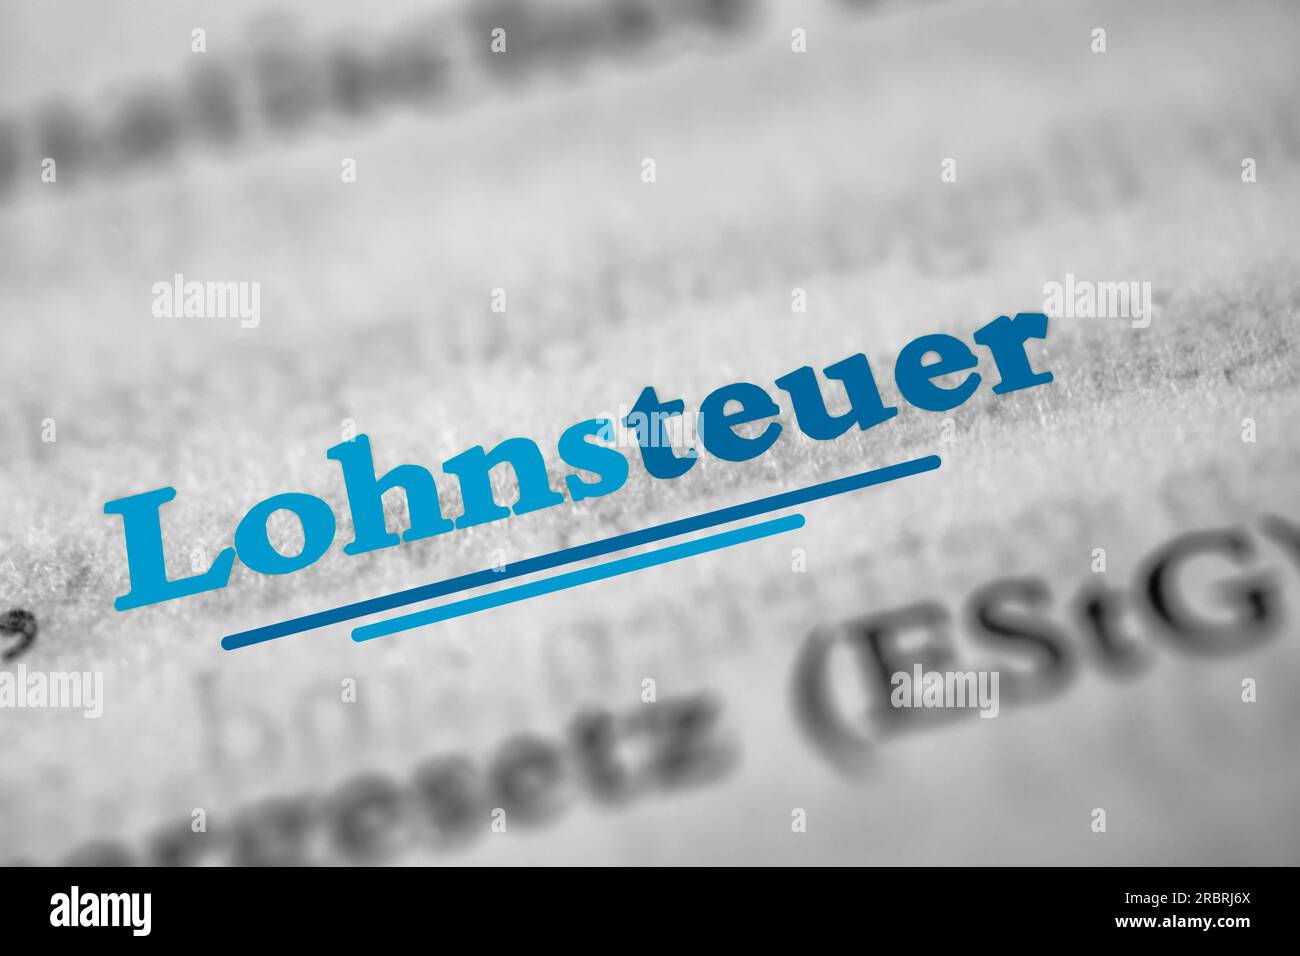 Lohnsteuer è la parola tedesca di tassazione dei salari Foto Stock